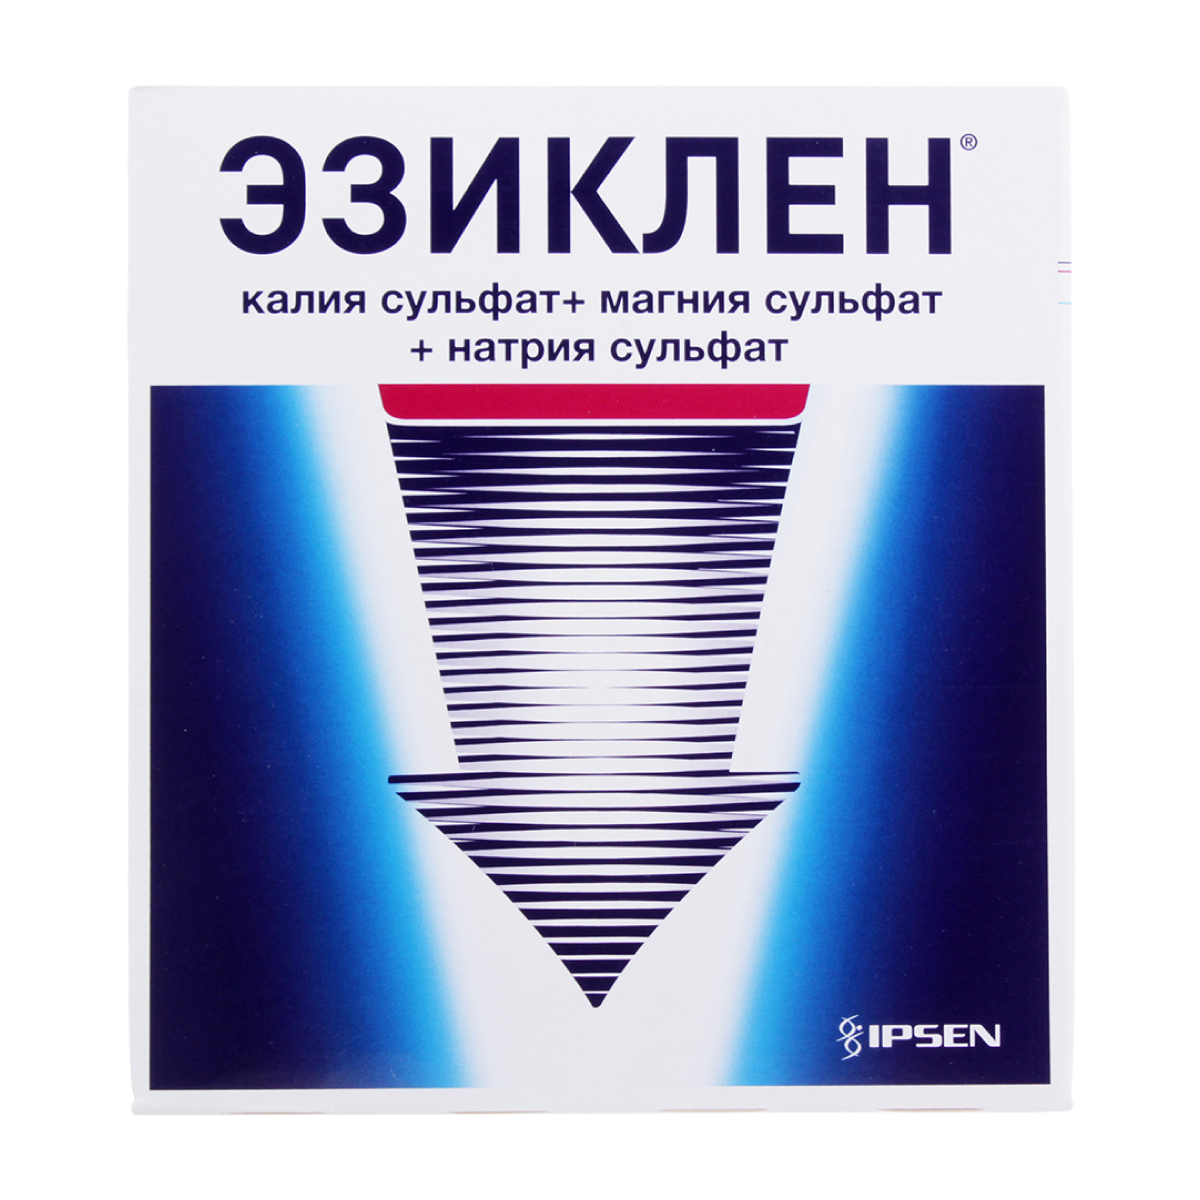 Эзиклен цена от 1 547 руб., купить в Москве в интернет-аптеке Polza.ru, инструкция по применению